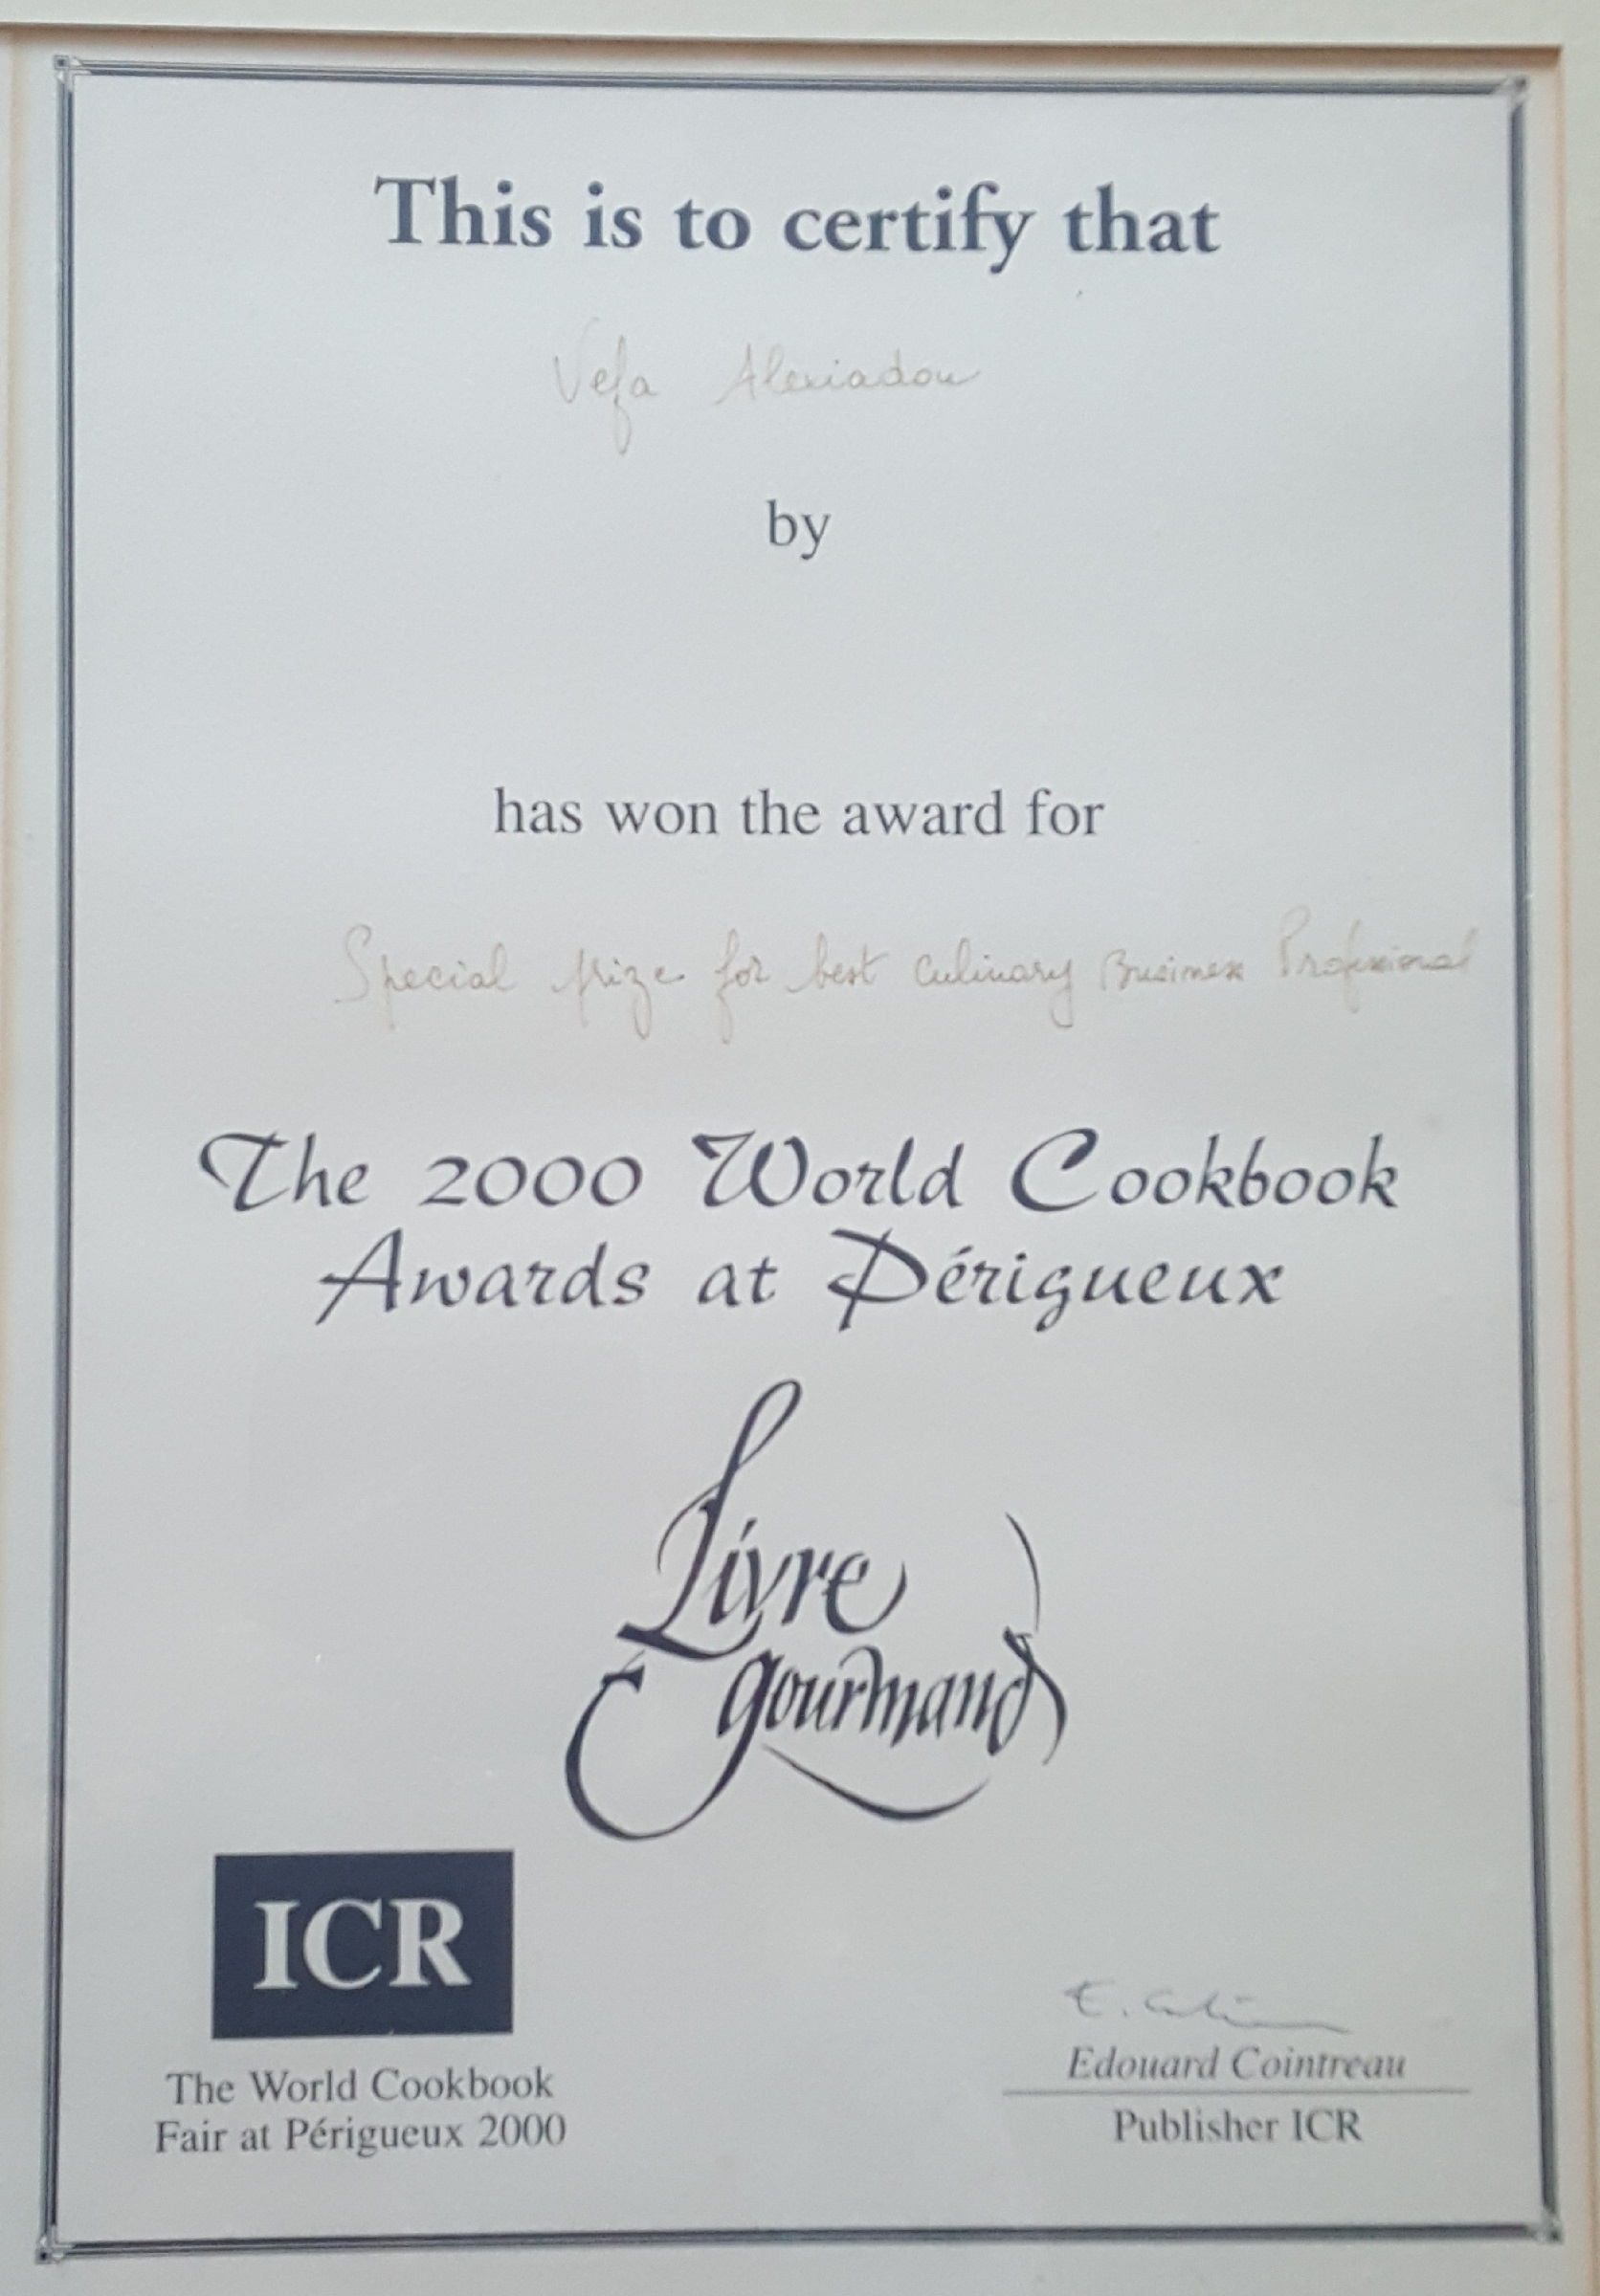 ΒΕΦΑ ΑΛΕΞΙΑΔΟΥ Livres Gourmand 2000 Perigueux Special Prize for Best Culinary Business Professional  vefaalexiadou cookbooks & blog vefaalexiadou.gr